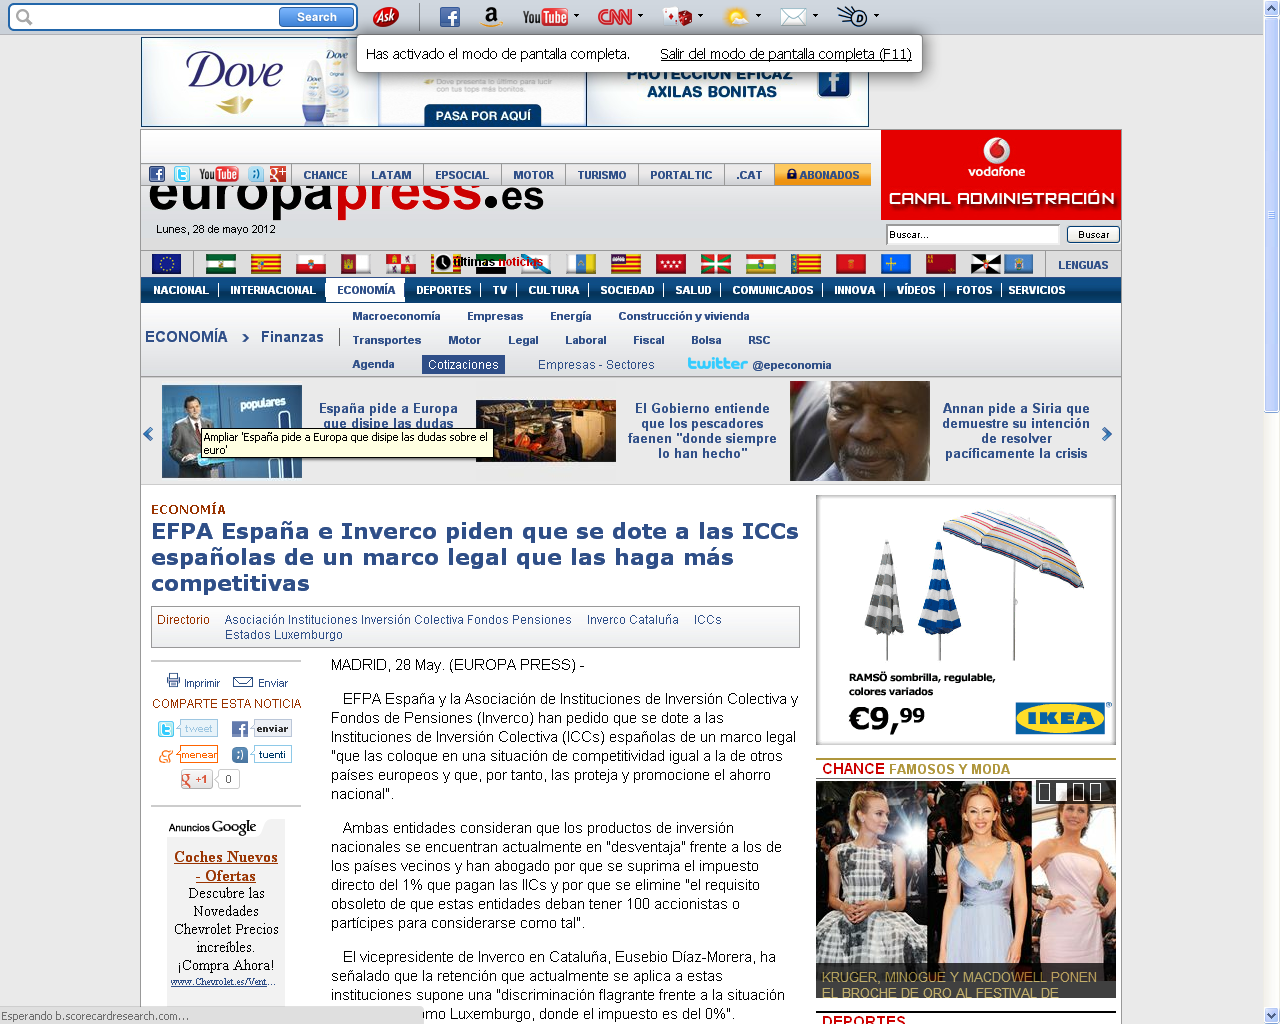 Medio: Europa Press Fecha: 28.05.2012 Cliente: EFPA Link: http://www.europapress.